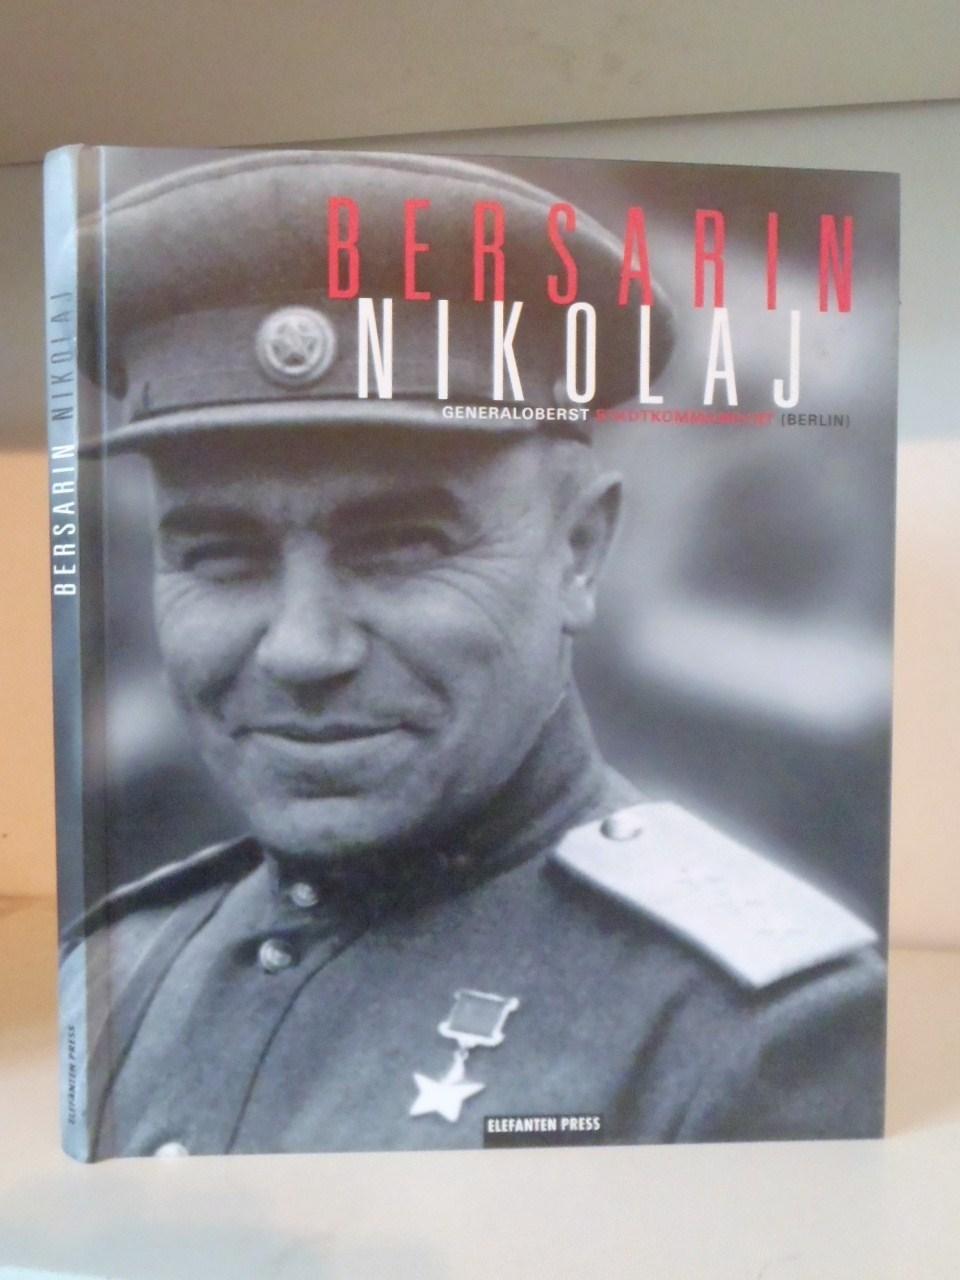 Bersarin Nikolaj Generaloberts Stadkommandant (Berlin) - Jahn, Peter (ed.)